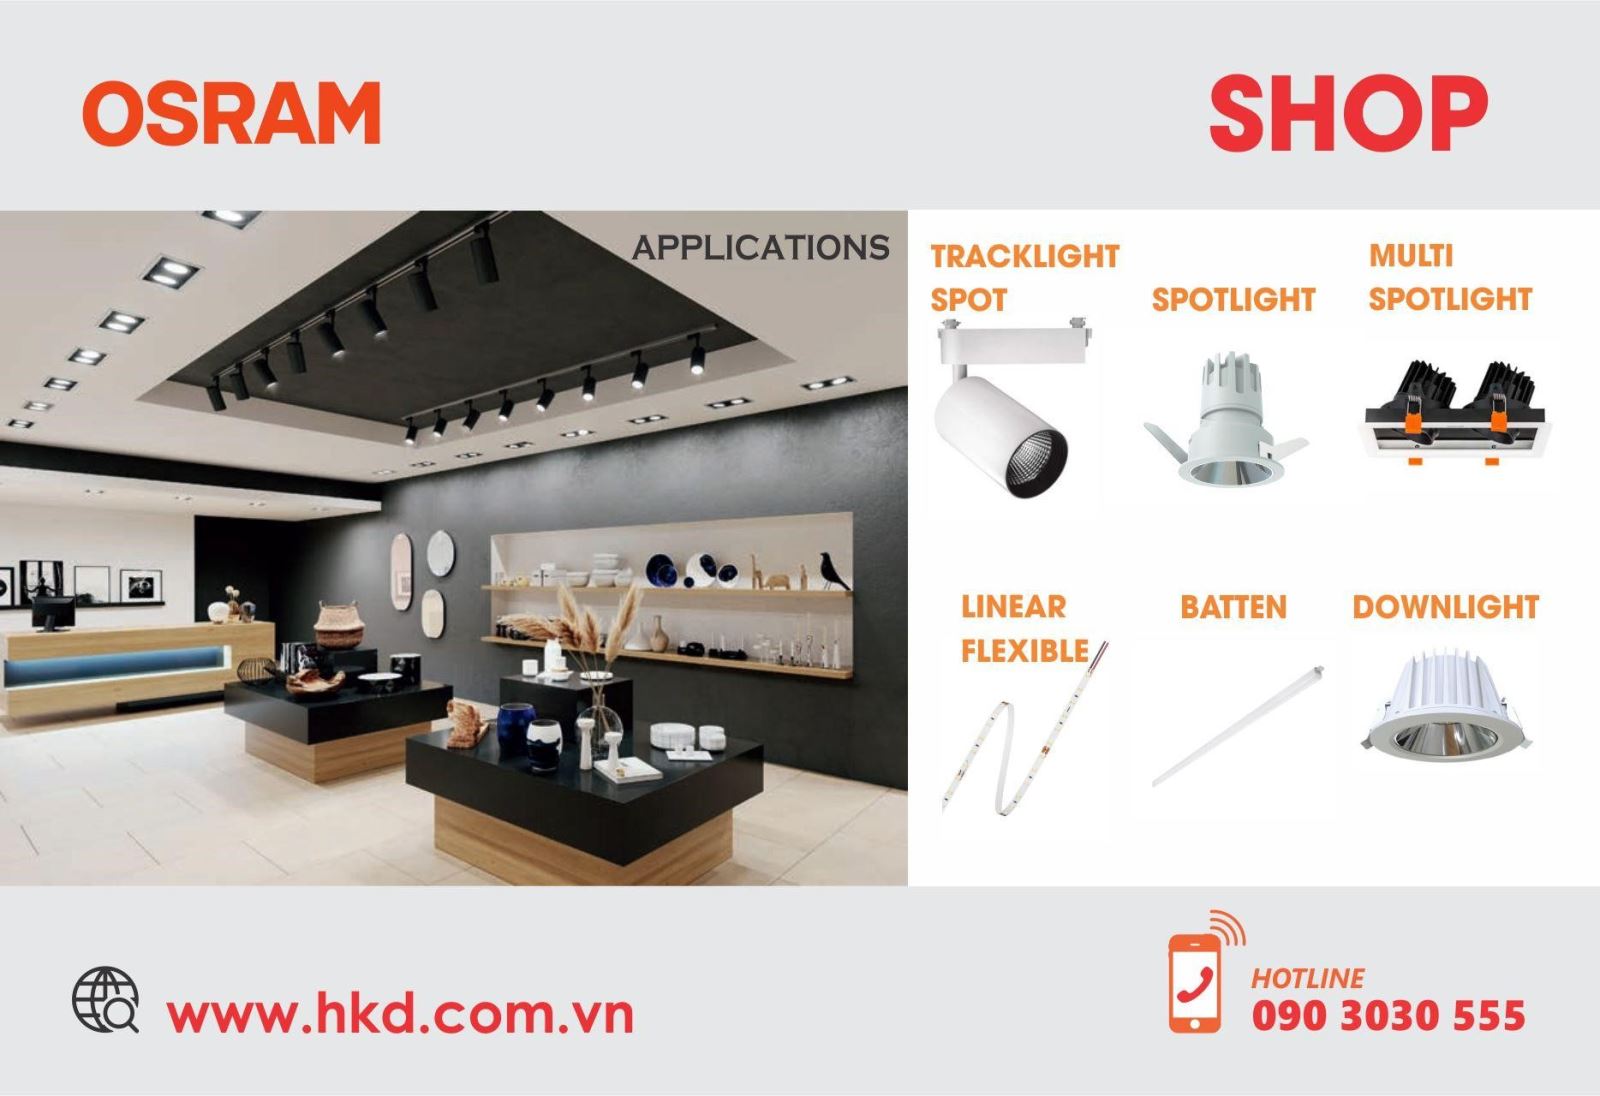 Đèn LED OSRAM ứng dụng cho Shop thời trang, Cửa hàng bán lẻ, Trung tâm mua sắm